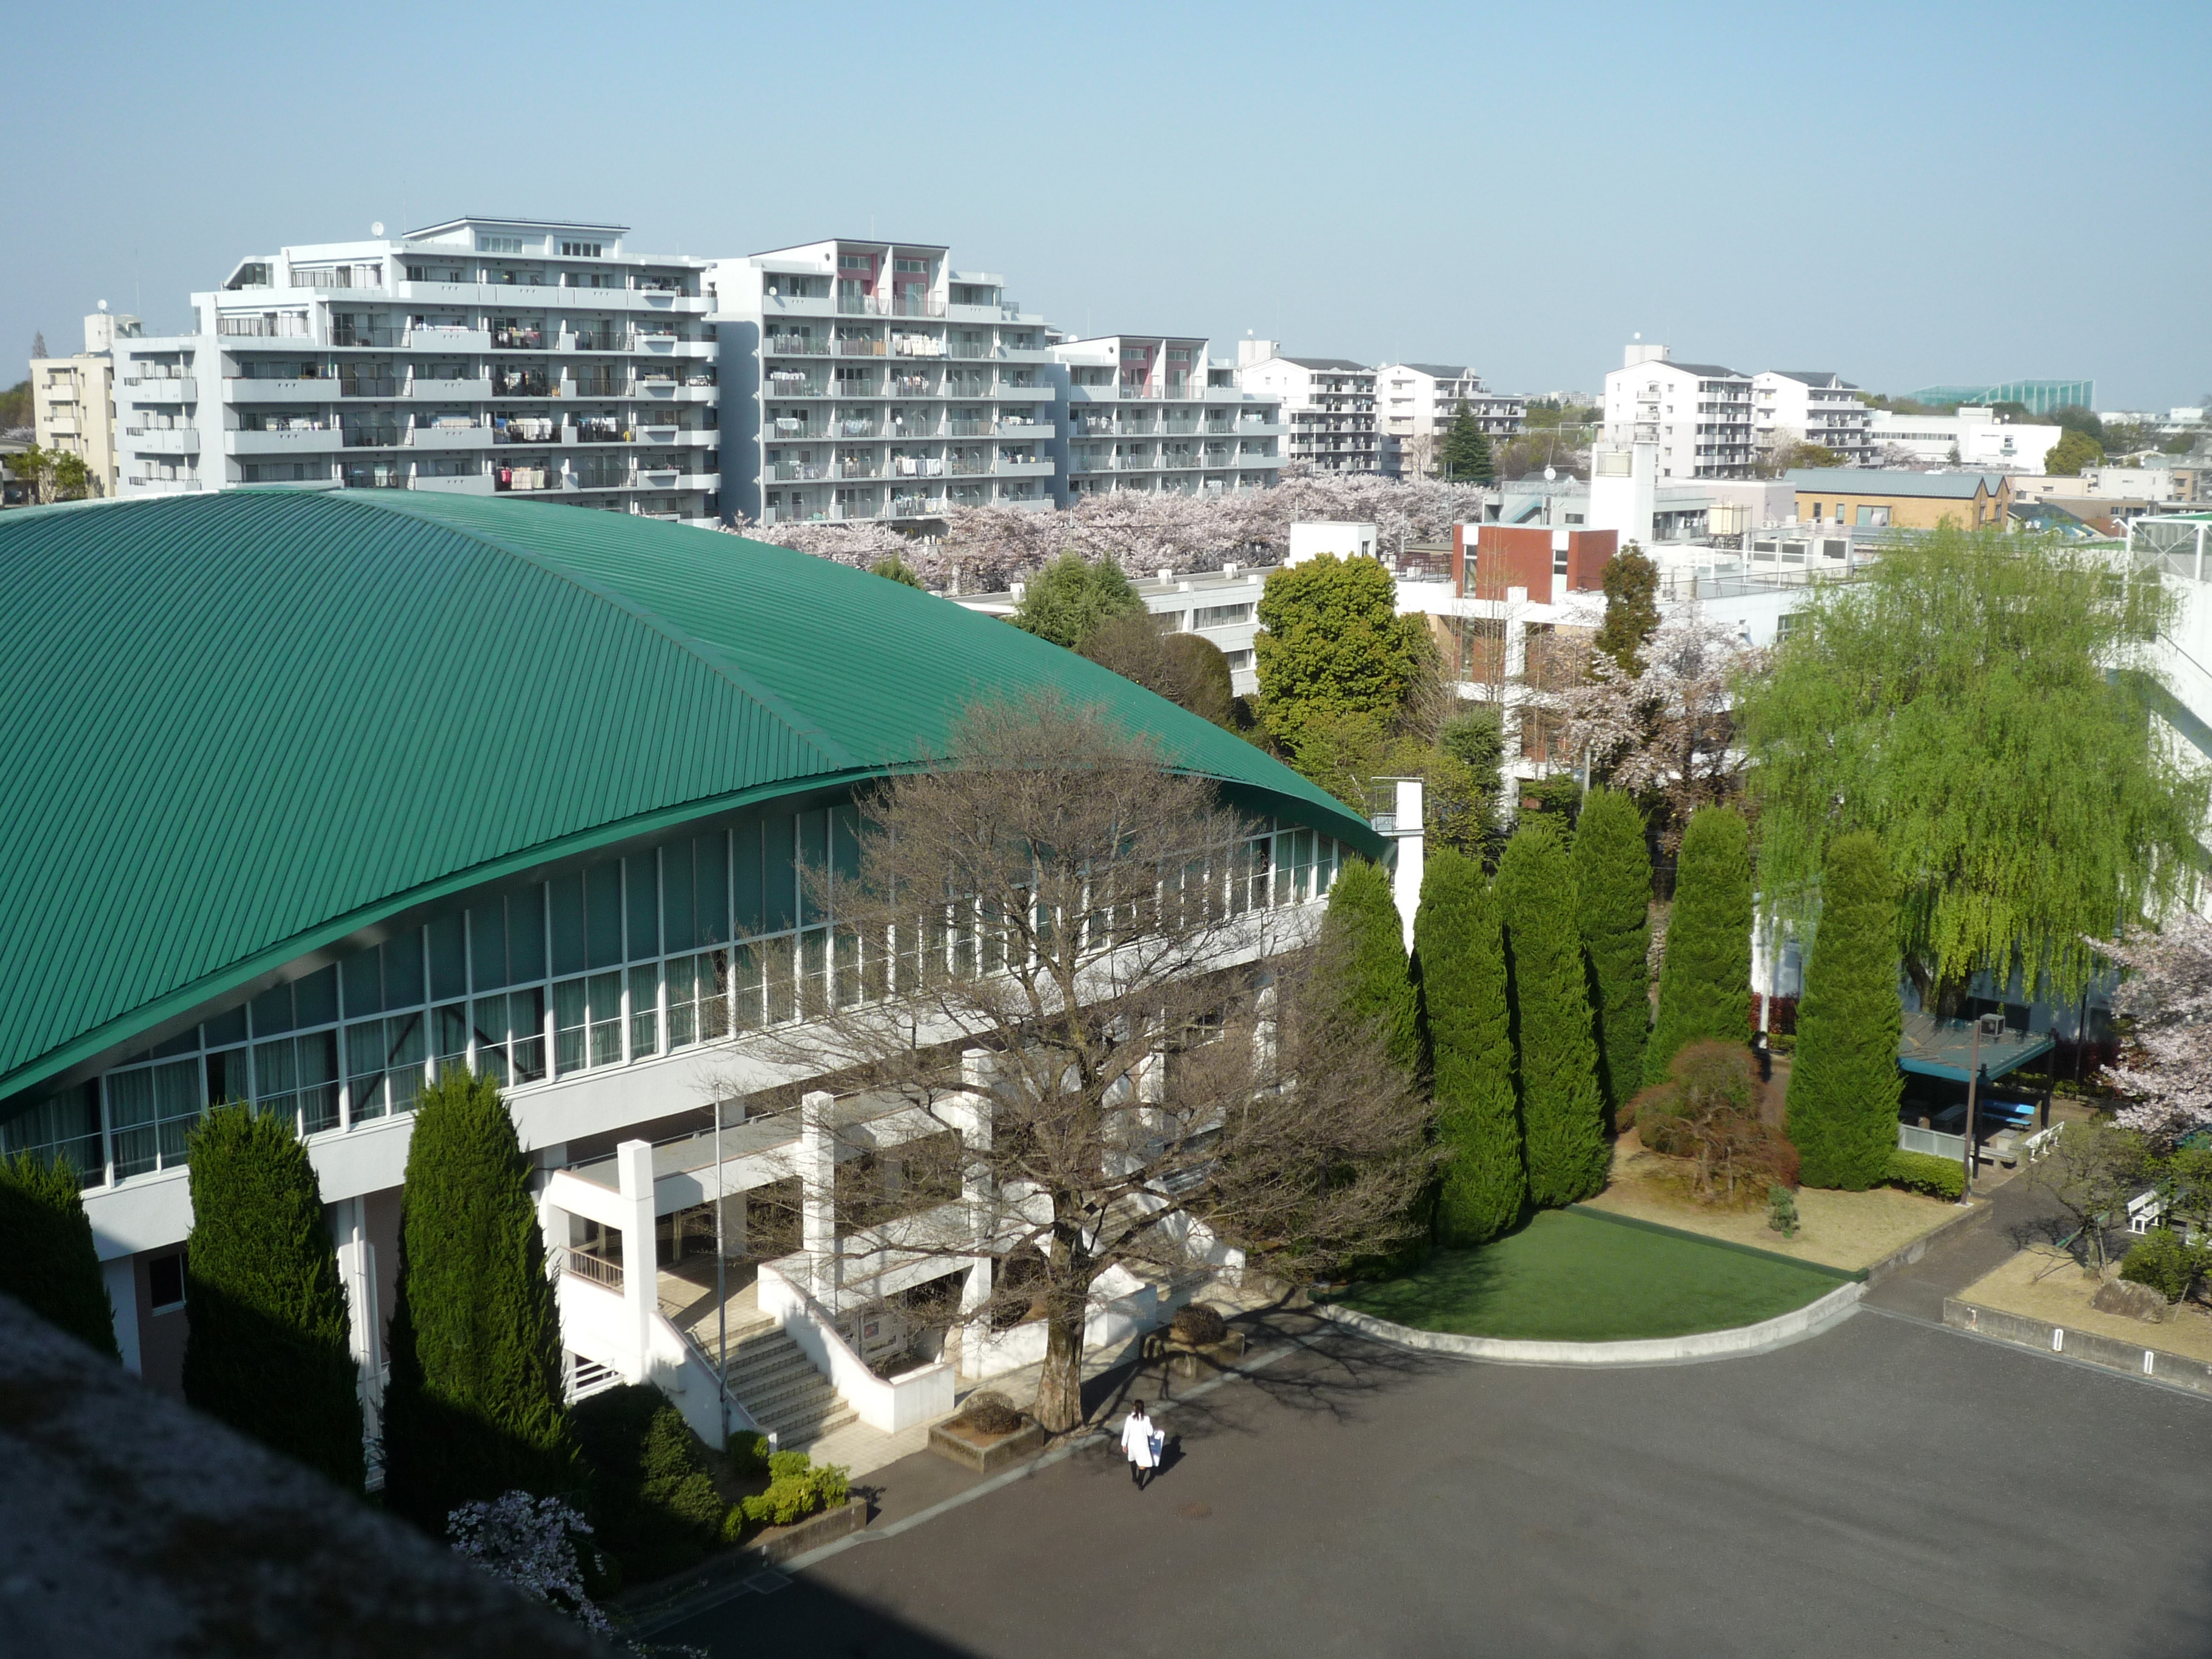 AU Campus